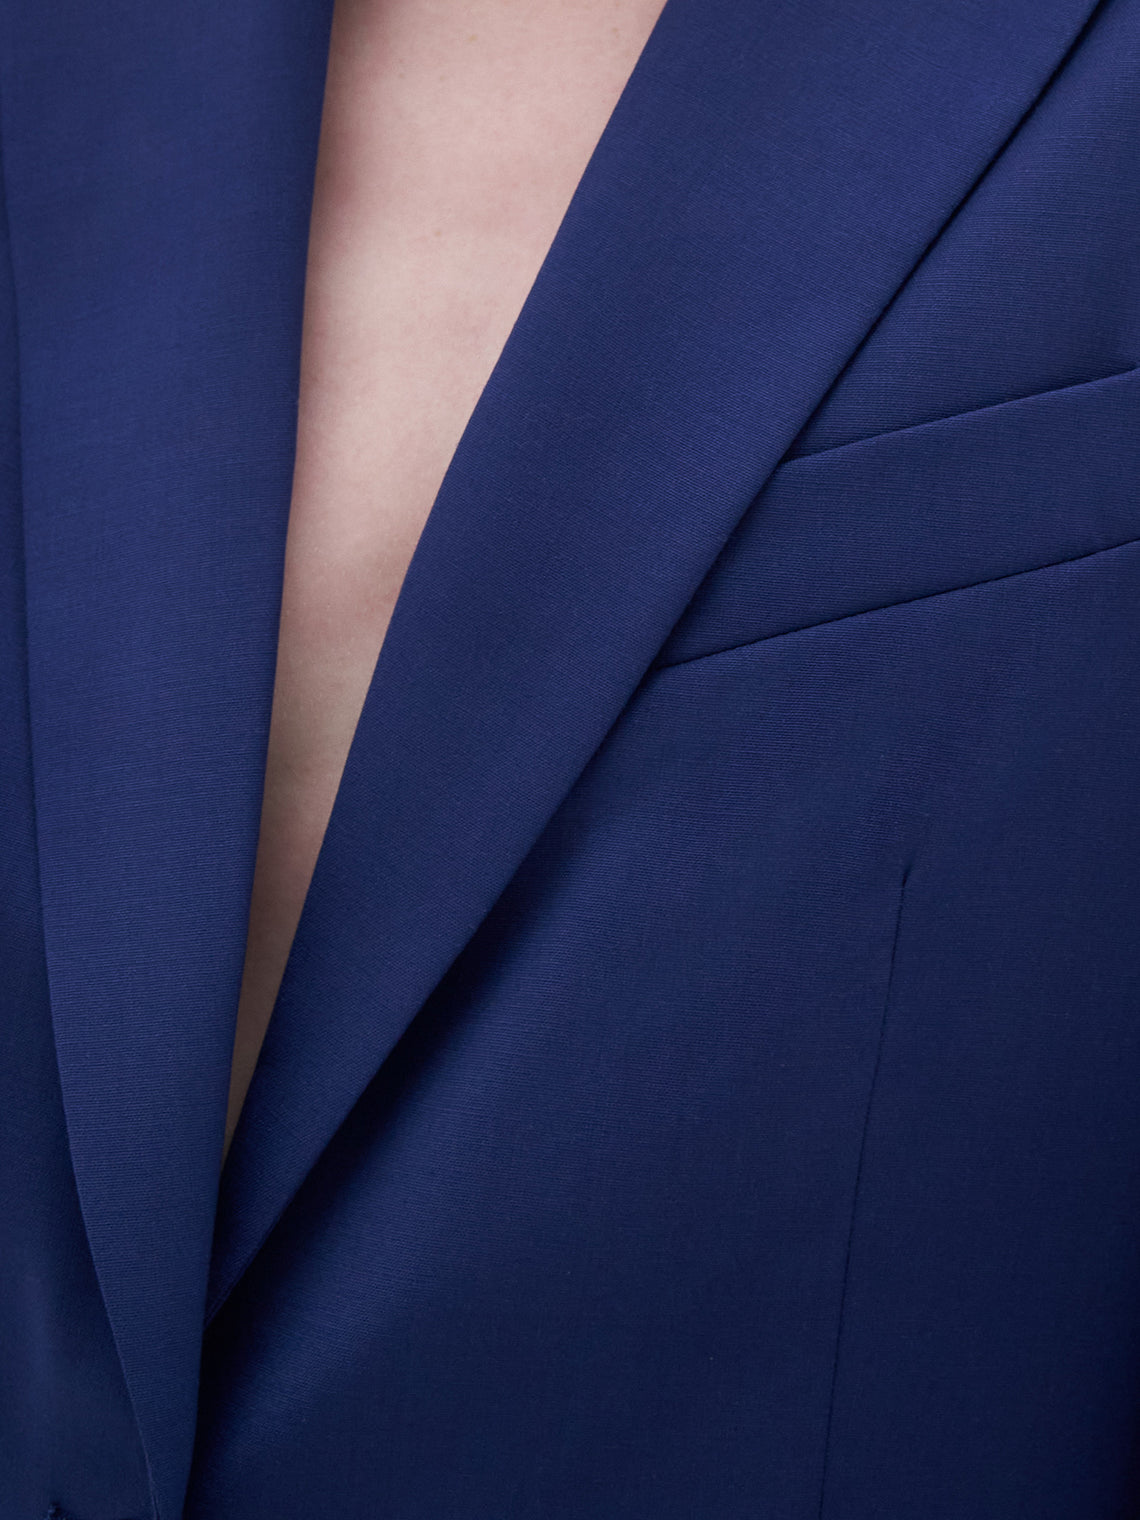 Sasha wool blazer by Filippa K - ocean blue